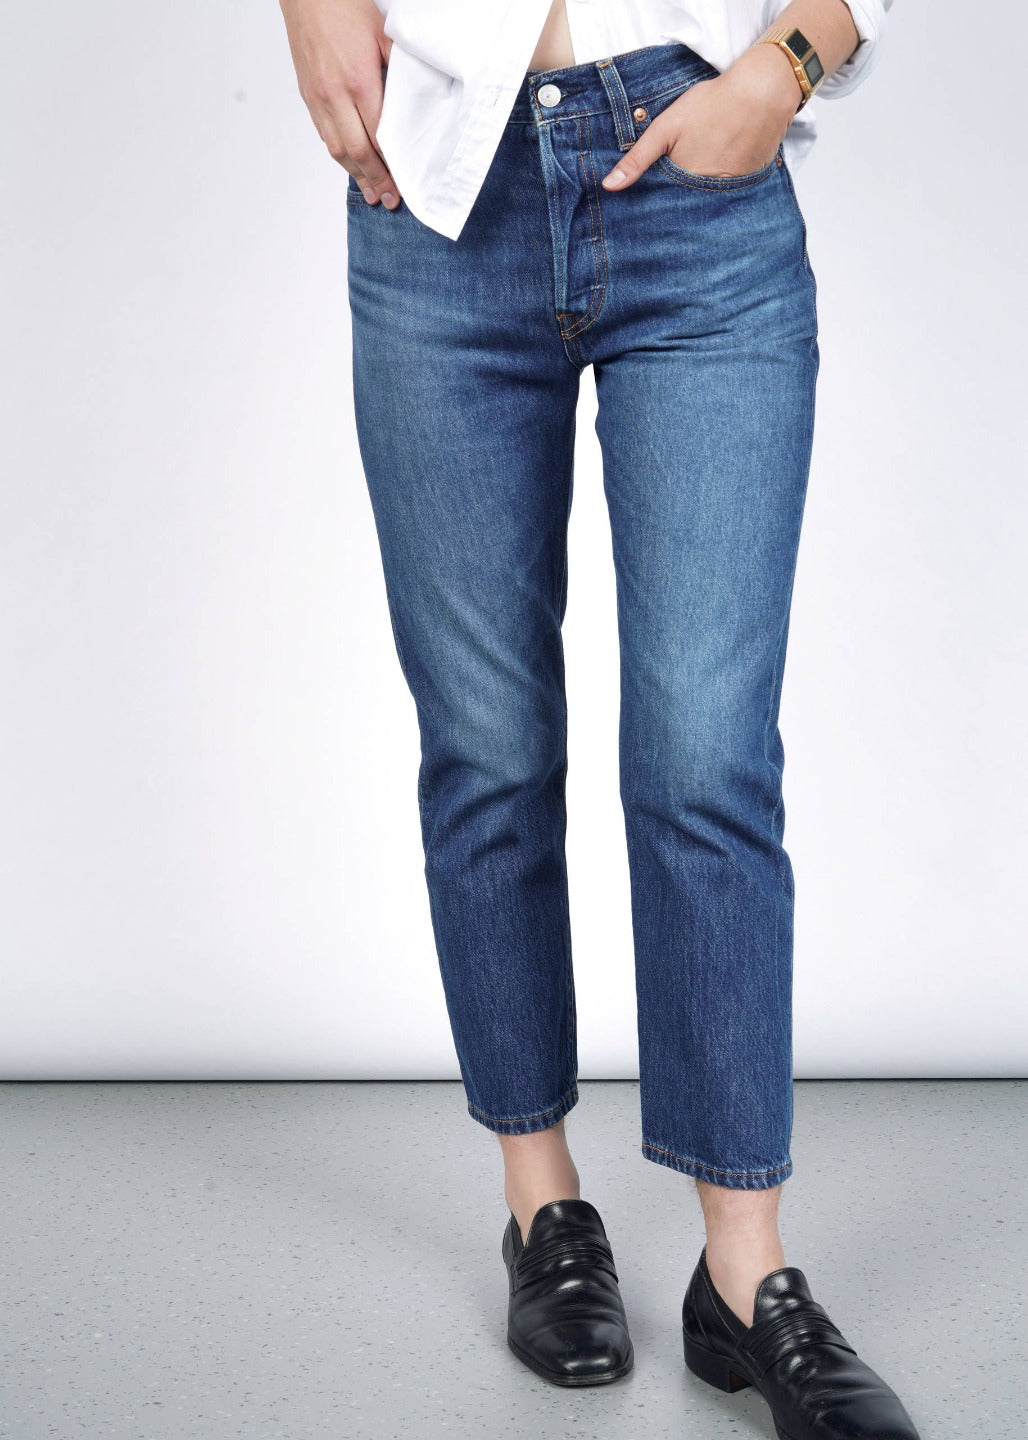 501 crop jeans blue levi's